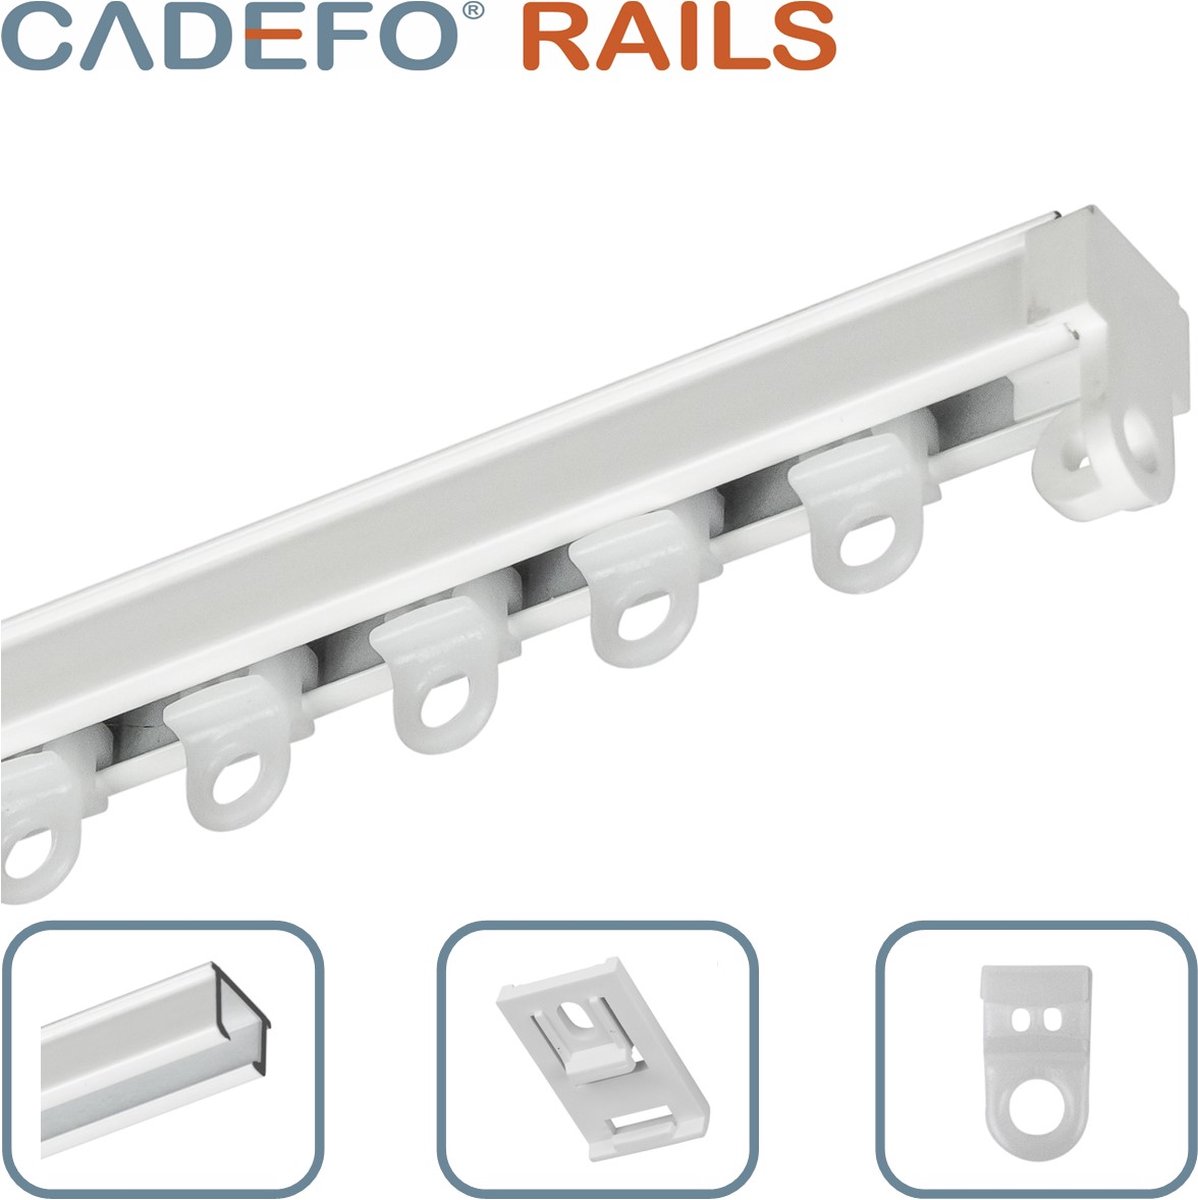 CADEFO RAILS (101 - 150 cm) Gordijnrails - Compleet op maat! - UIT 1 STUK - Leverbaar tot 6 meter - Plafondbevestiging - Lengte 101 cm